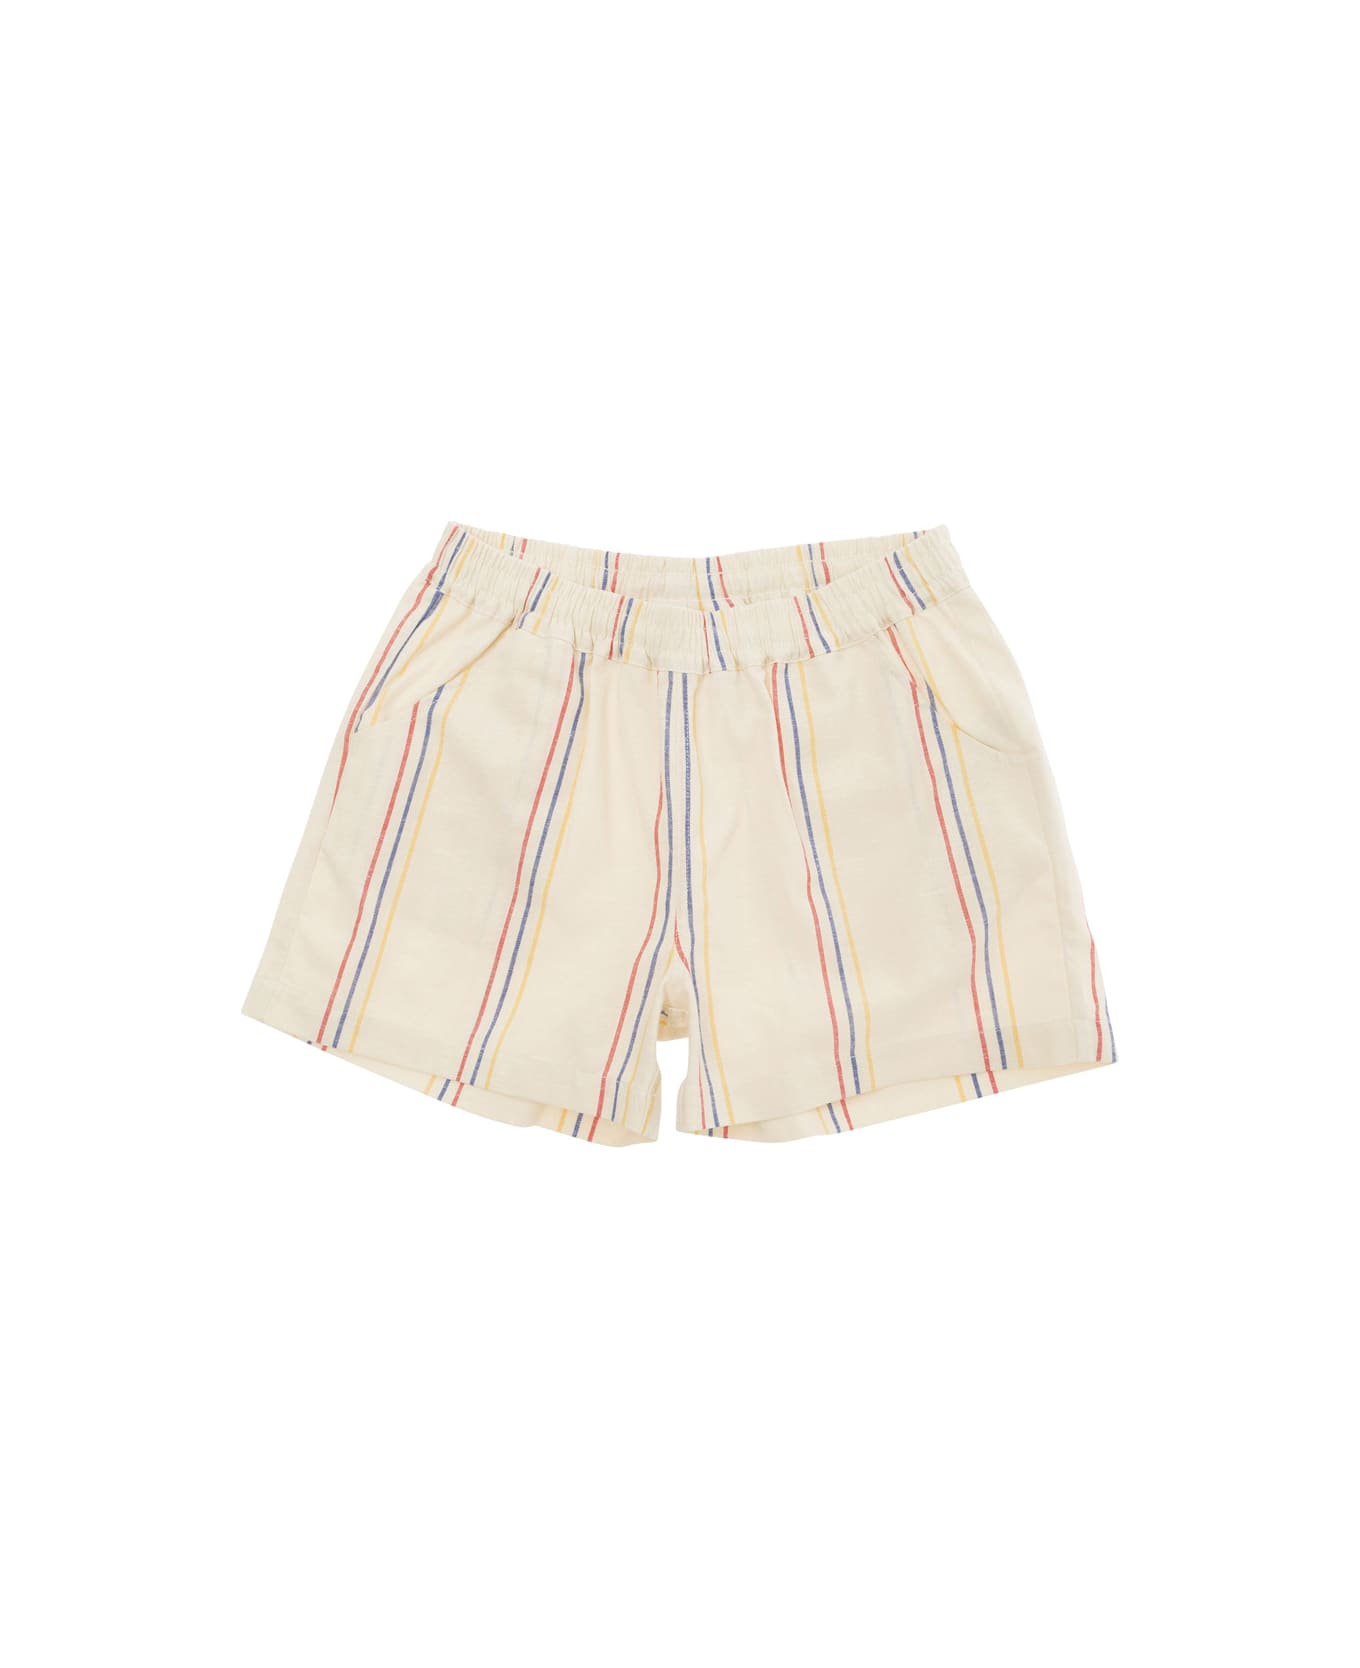 Mini Rodini Stripe Woven Shorts - White